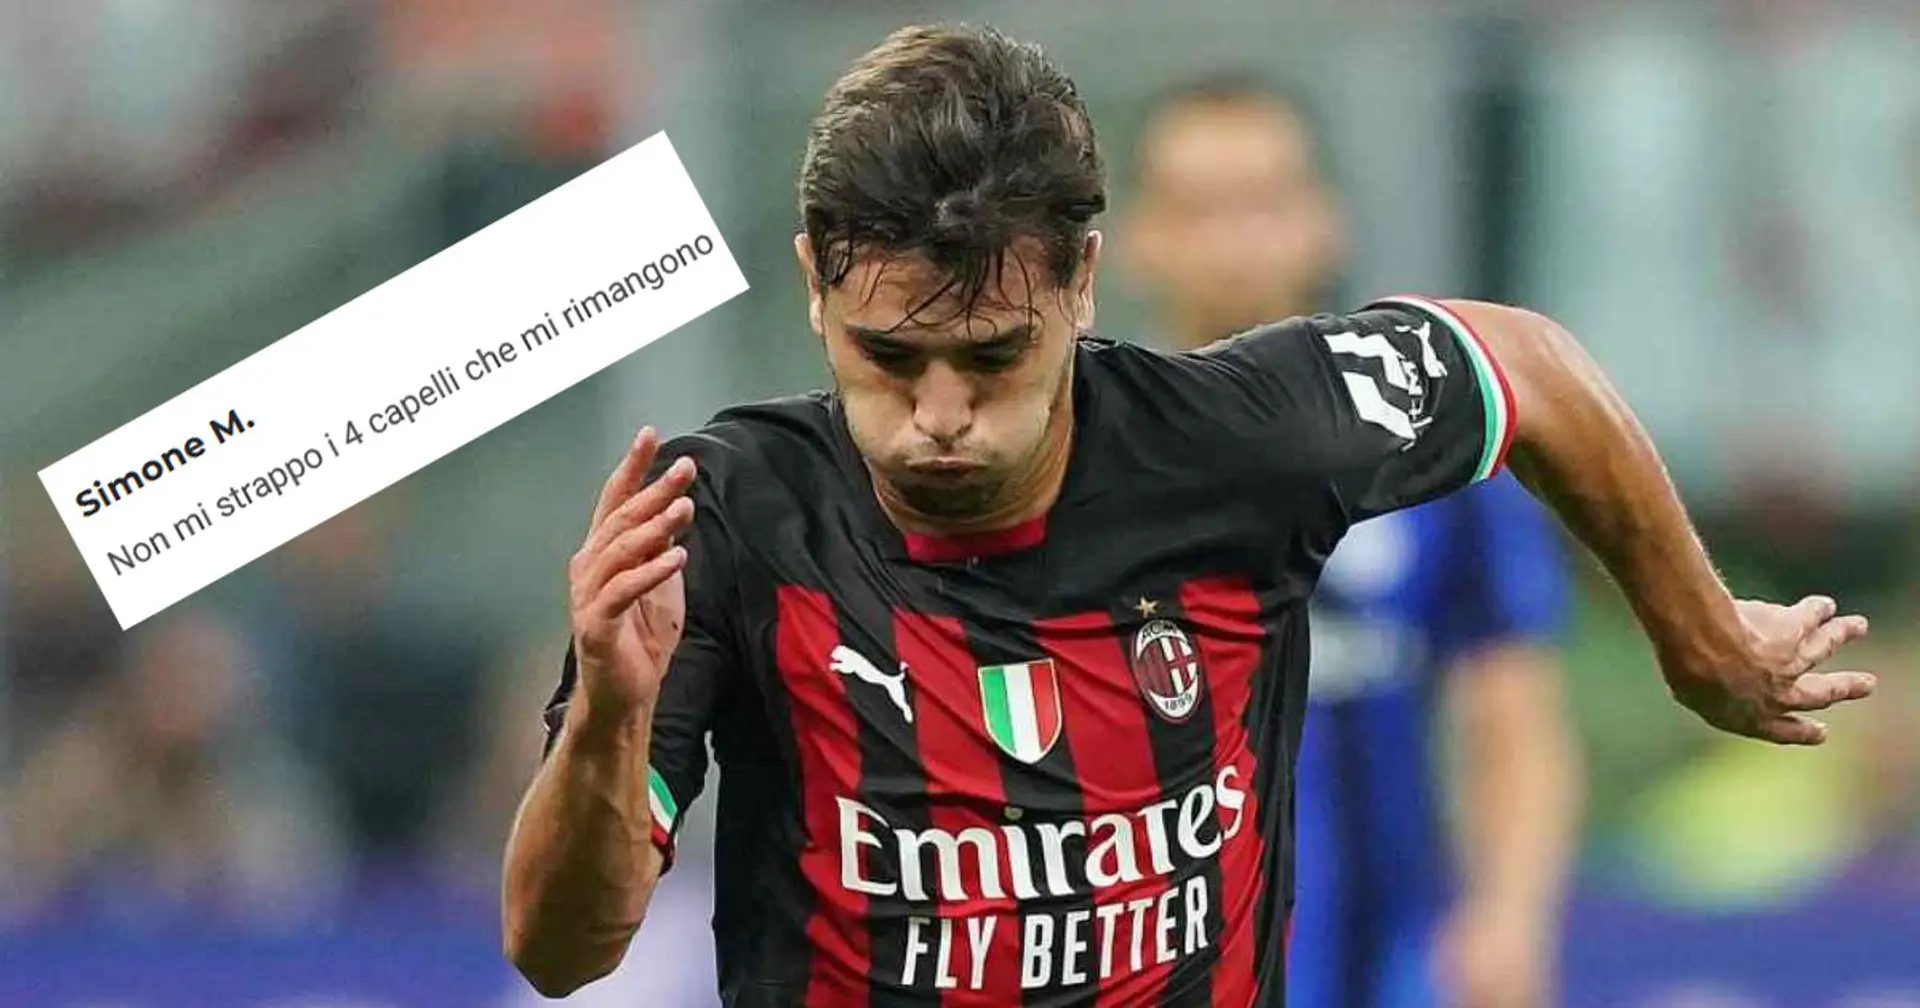 Tifosi del Milan uniti dopo la decisione del Real Madrid sul futuro di Diaz: "Non mi strappo i capelli"